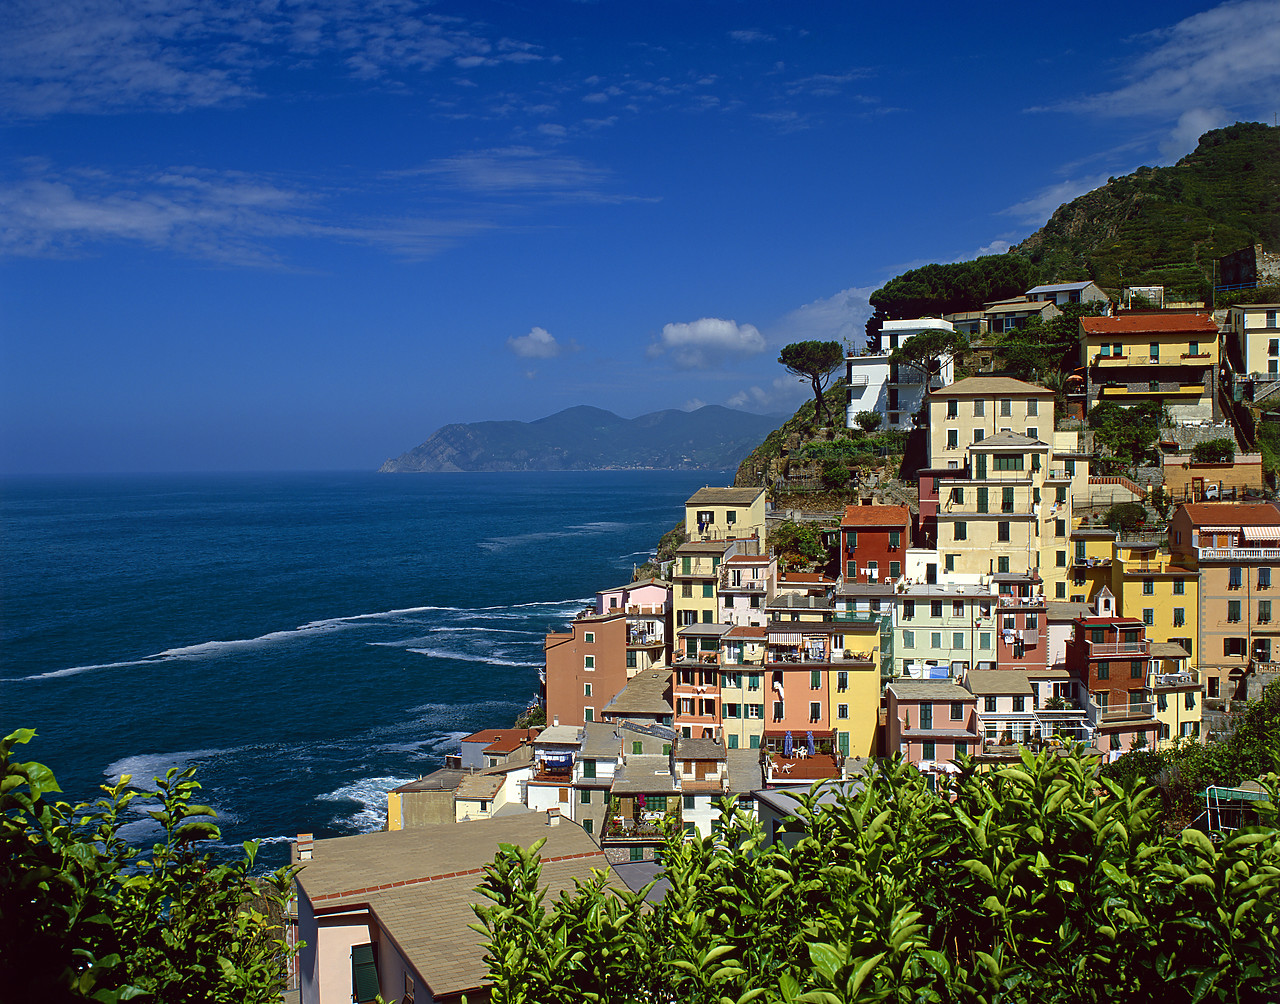 #020176-2 - Riomaggiore, Cinque Terre, Liguria, Italy